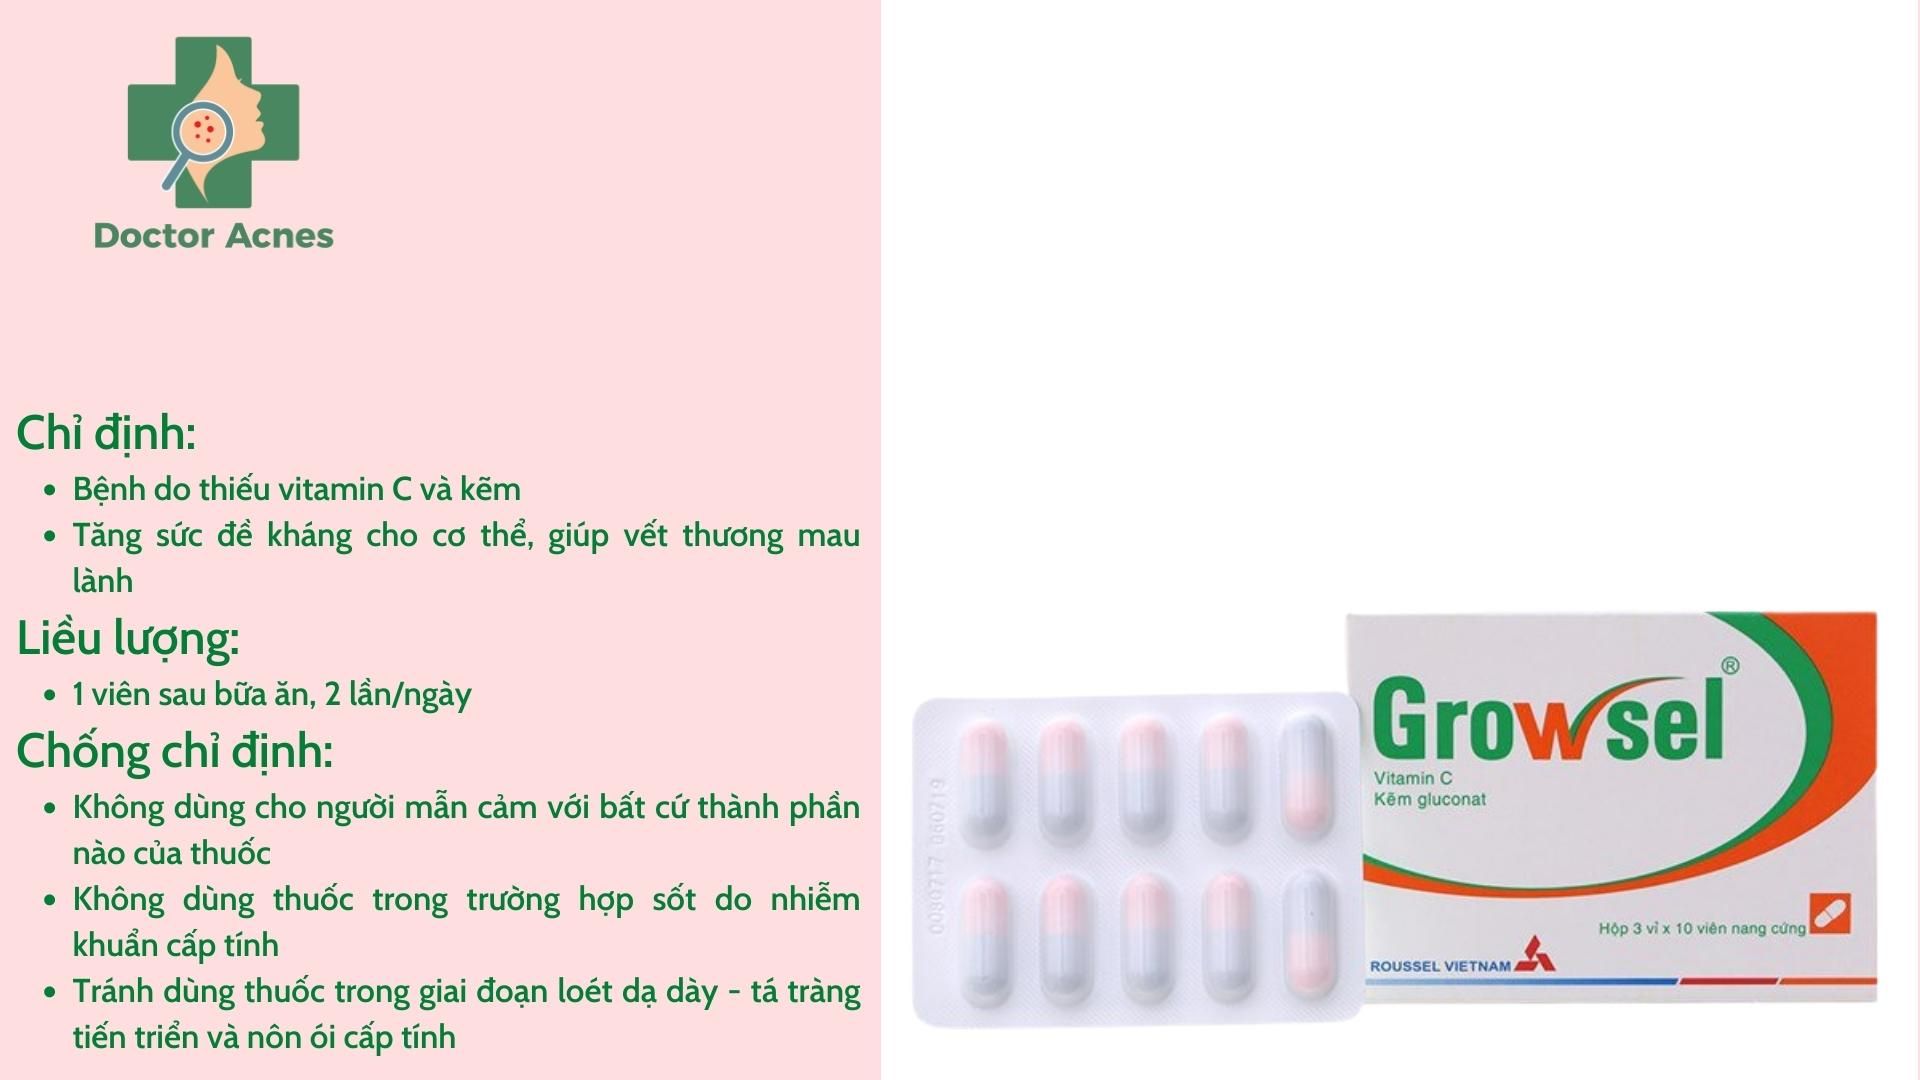 Thuốc uống hỗ trợ trị mụn Growsel (thuốc không kê đơn) - Doctor Acnes